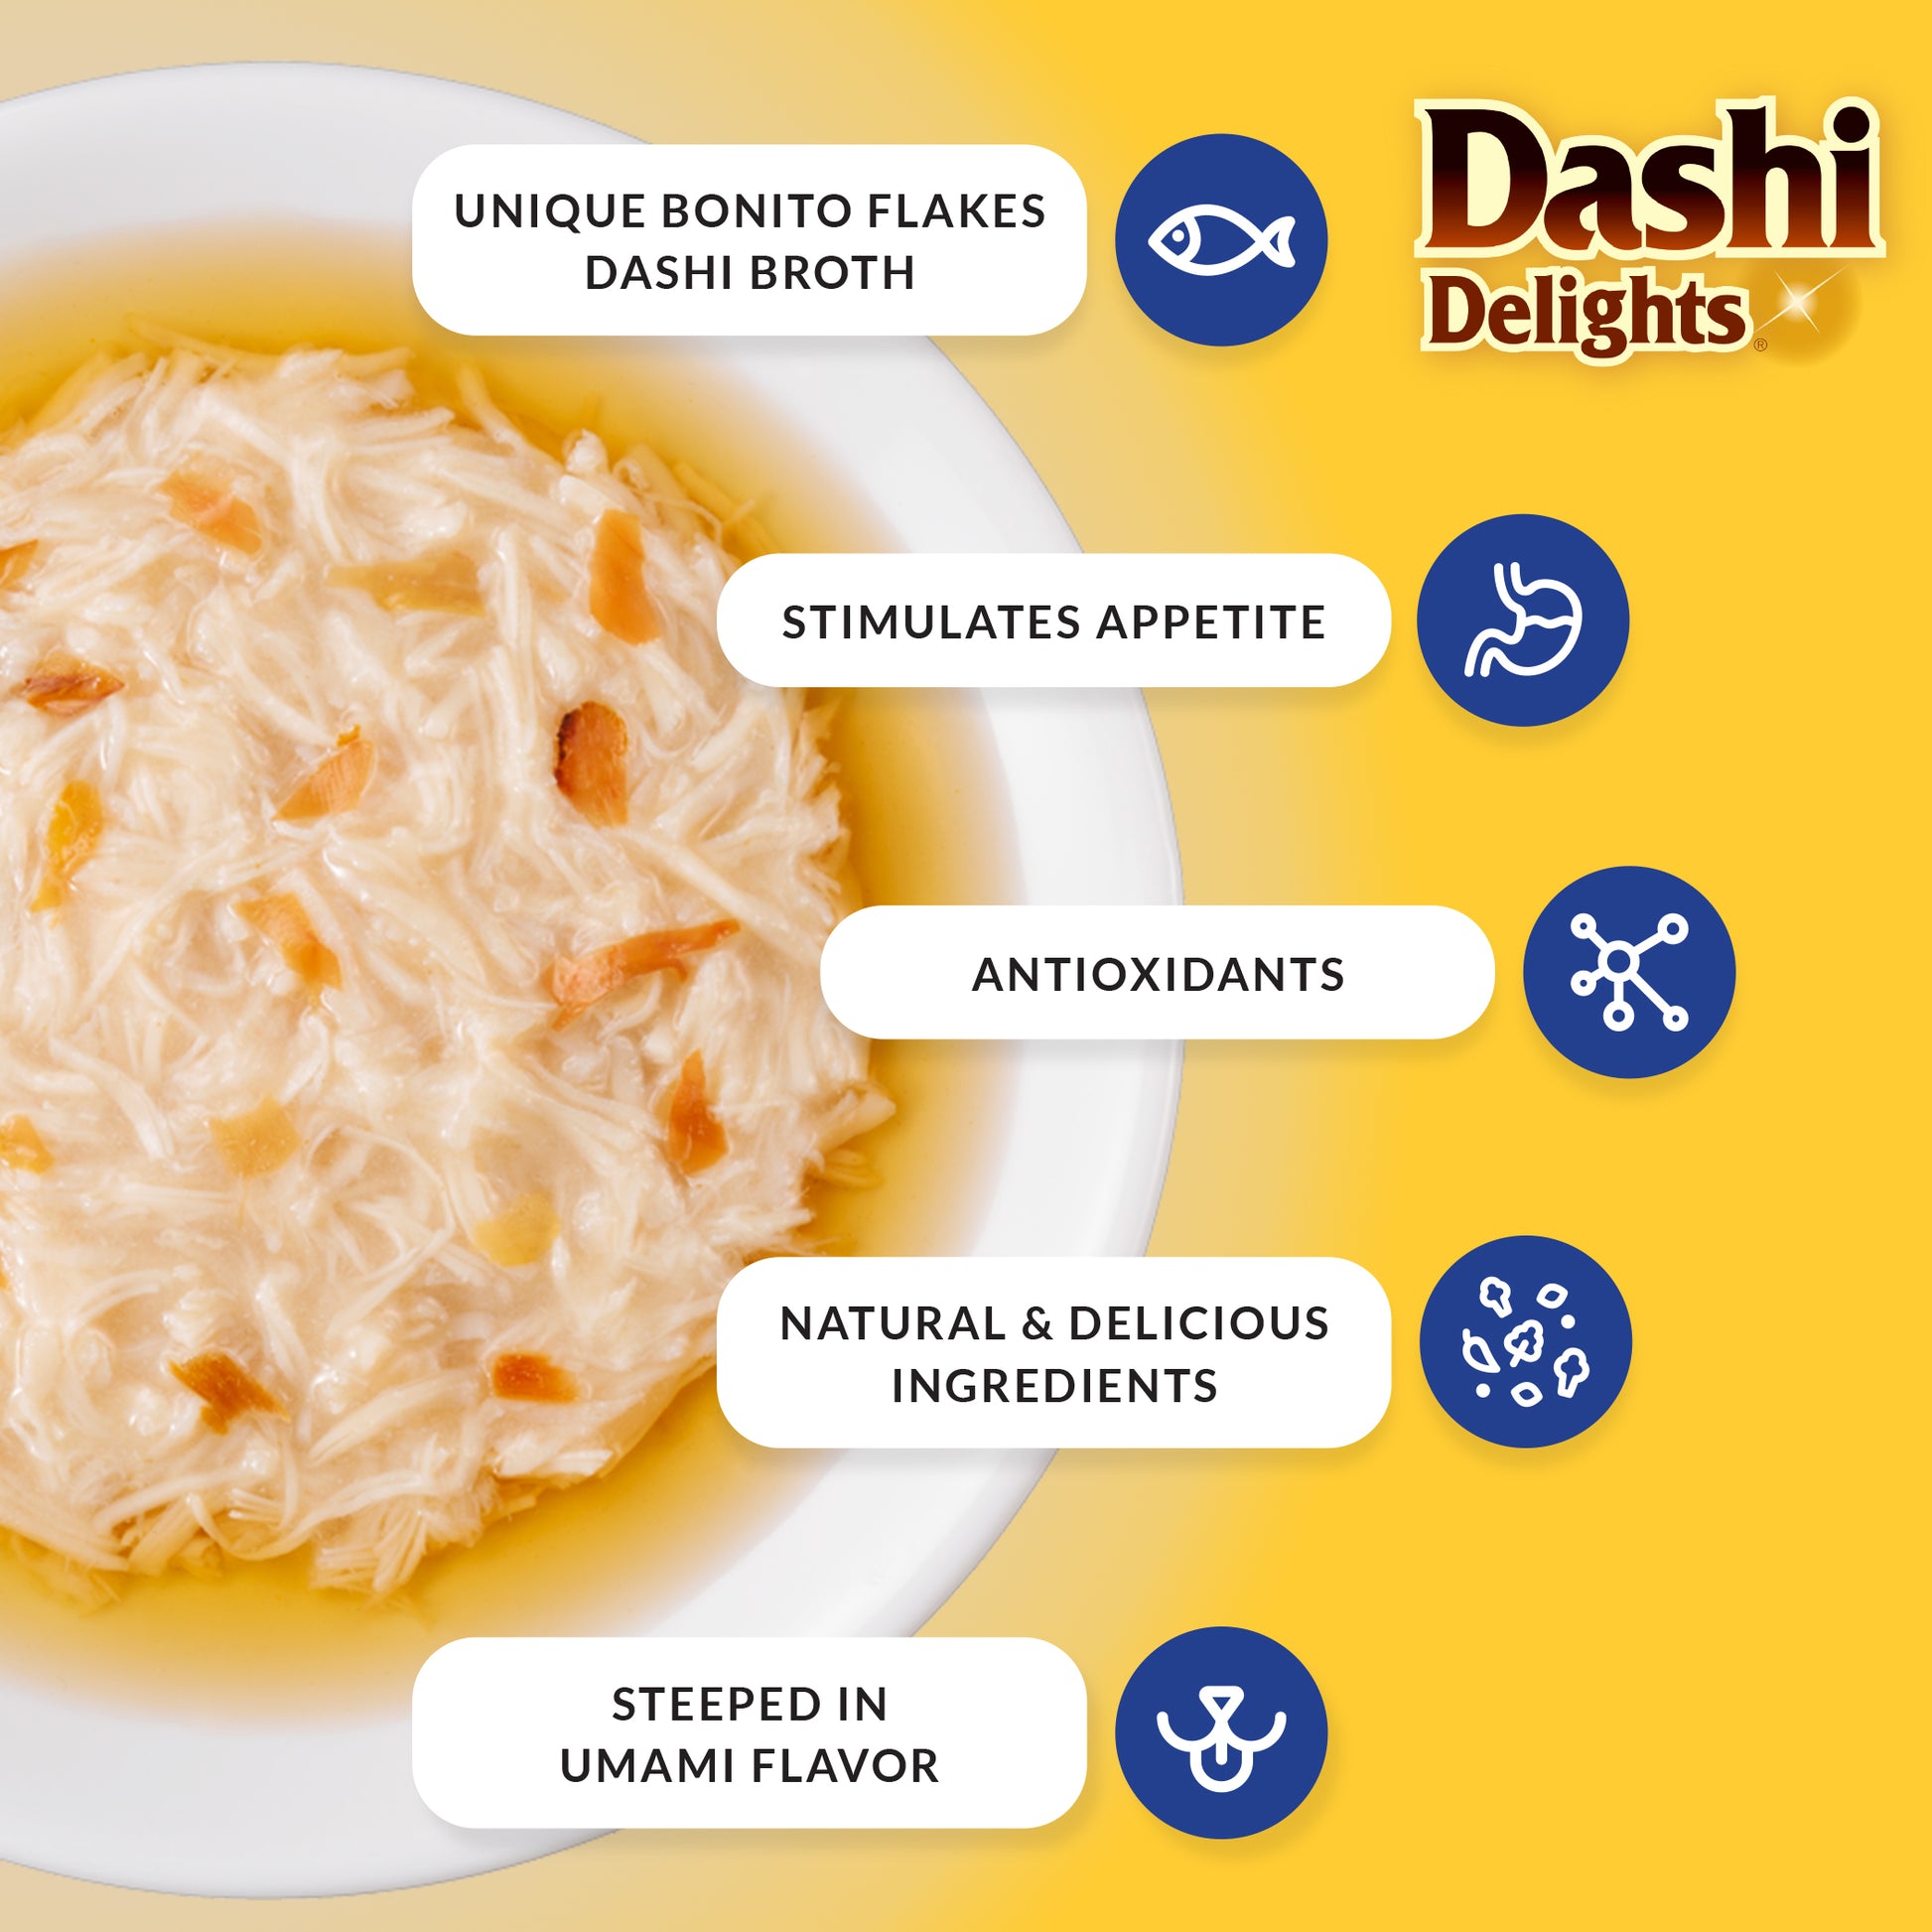 Inaba Dashi Delight Seafood Variety 12PCS/PK